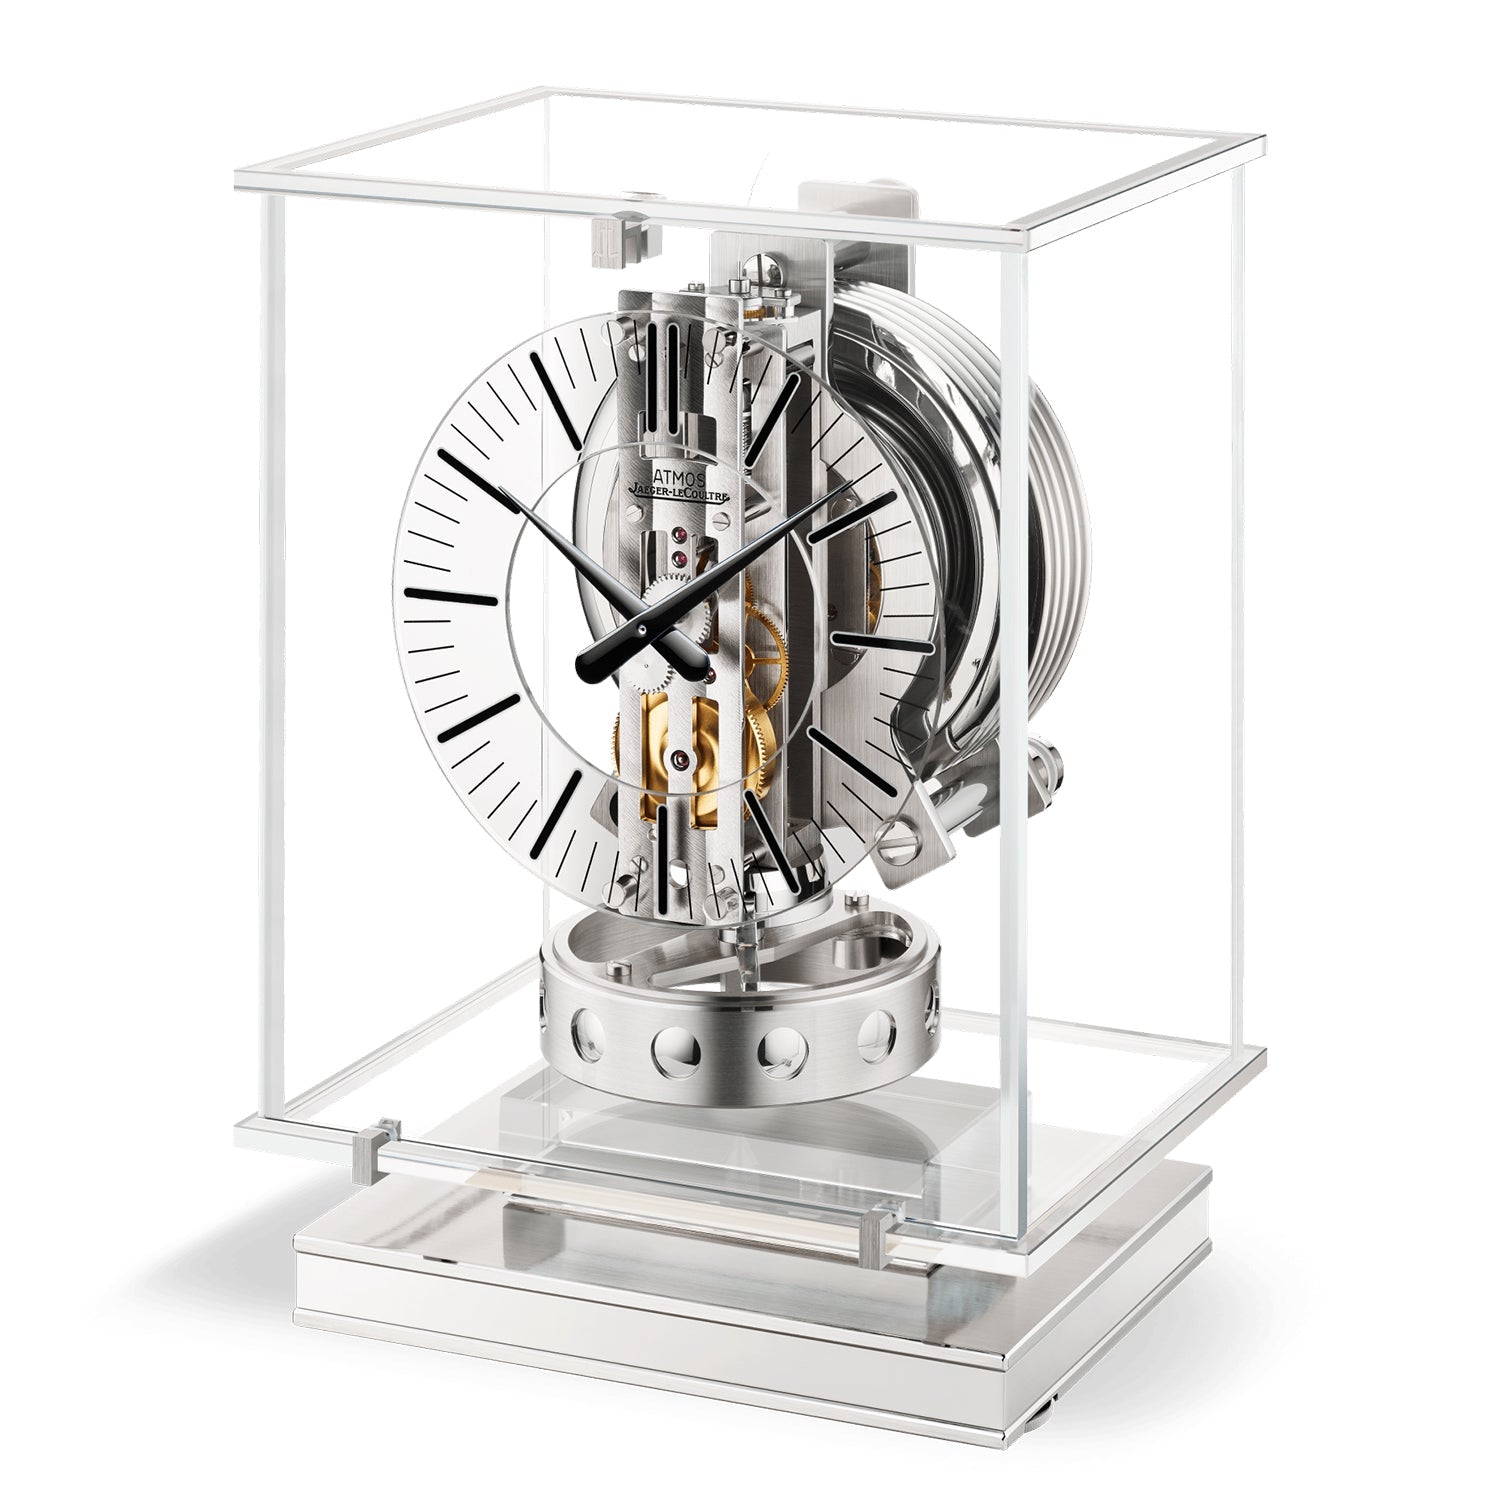 Jaeger-LeCoultre - Atmos Transparente Clock (Q5135204)